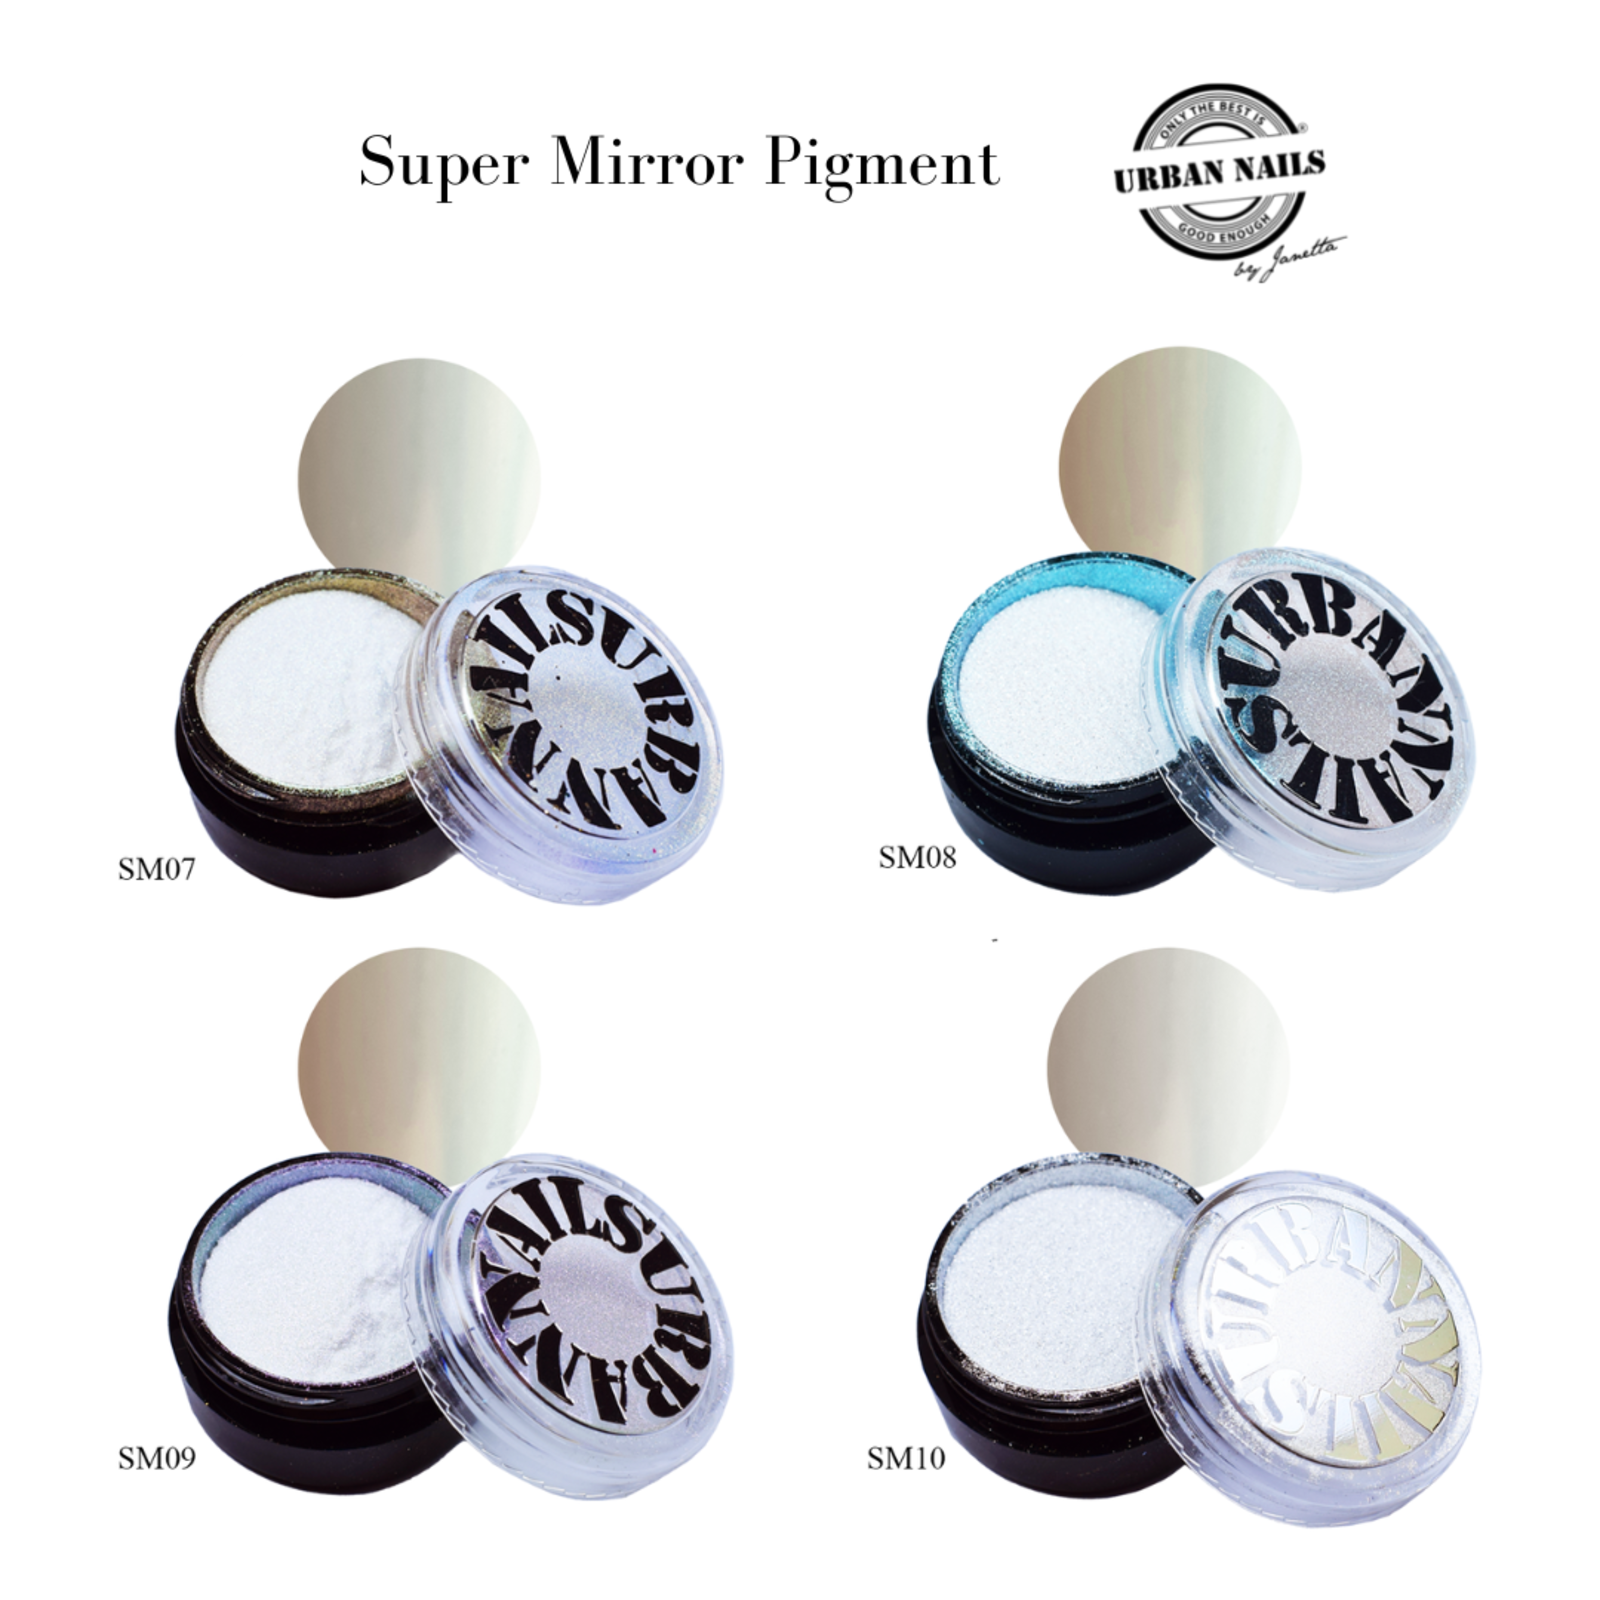 Urban nails Super Mirror Pigment SM08